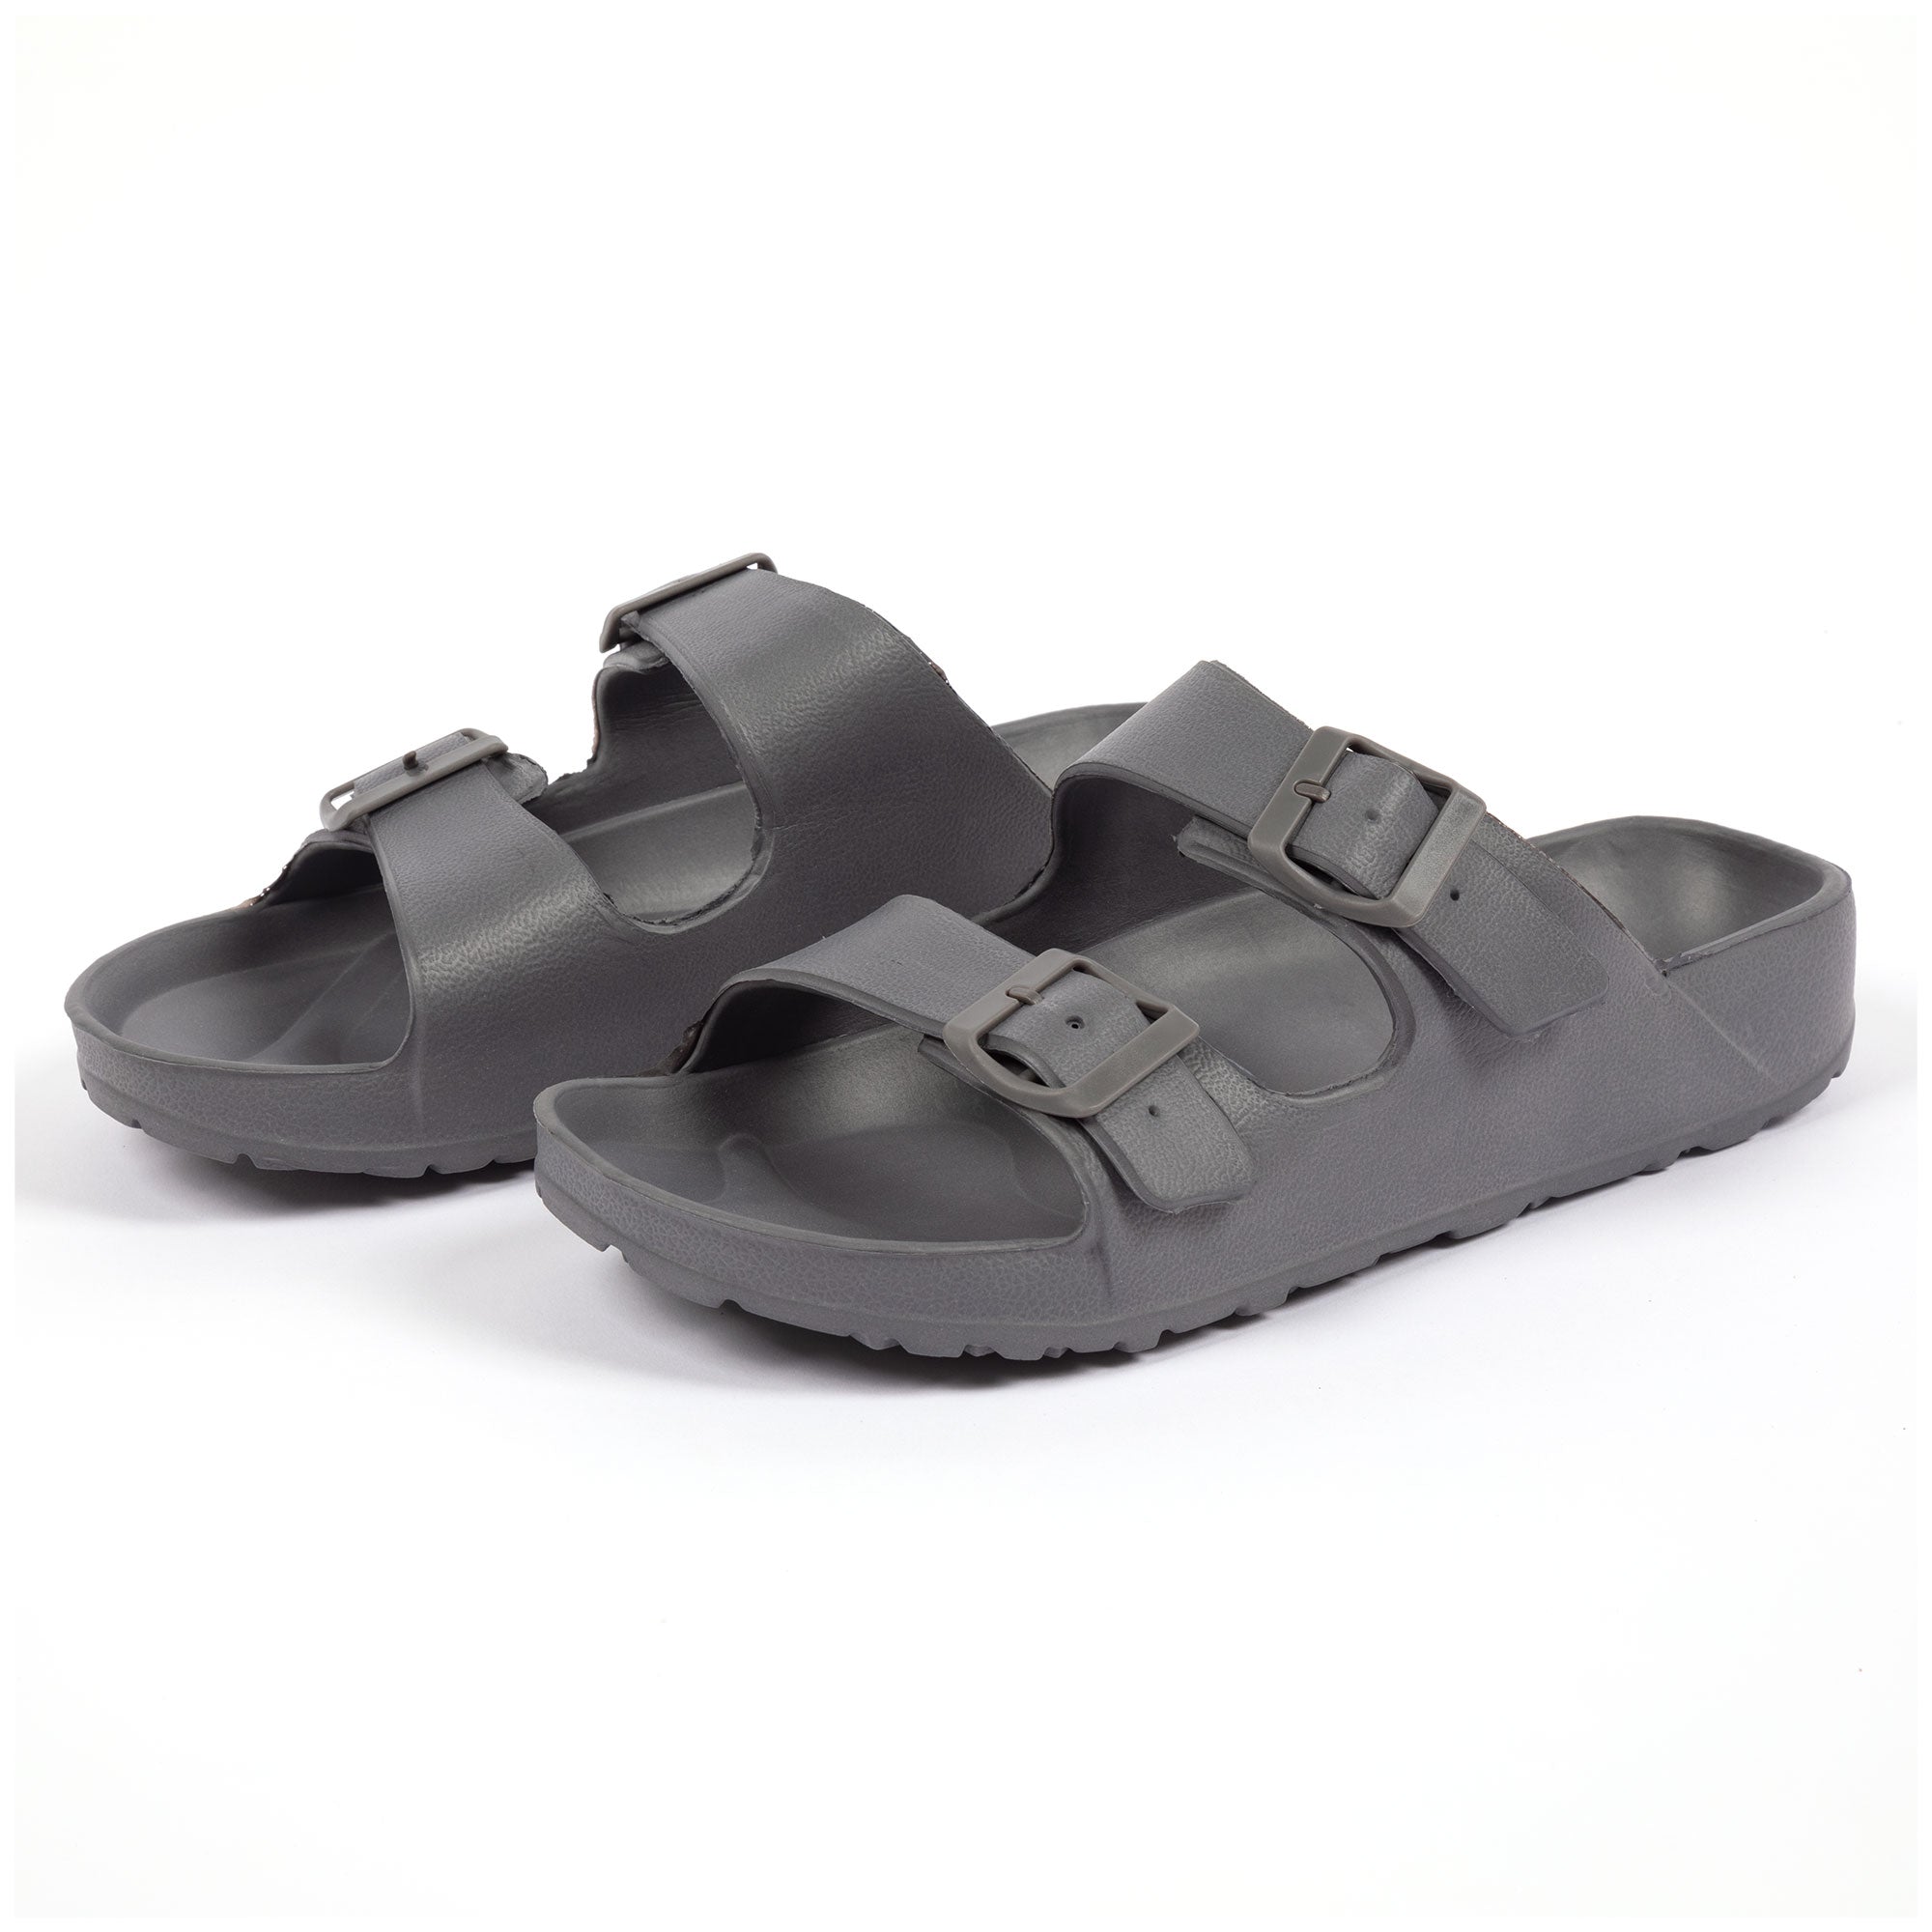 Men's Double Buckle Slide Sandals - Gray - 11